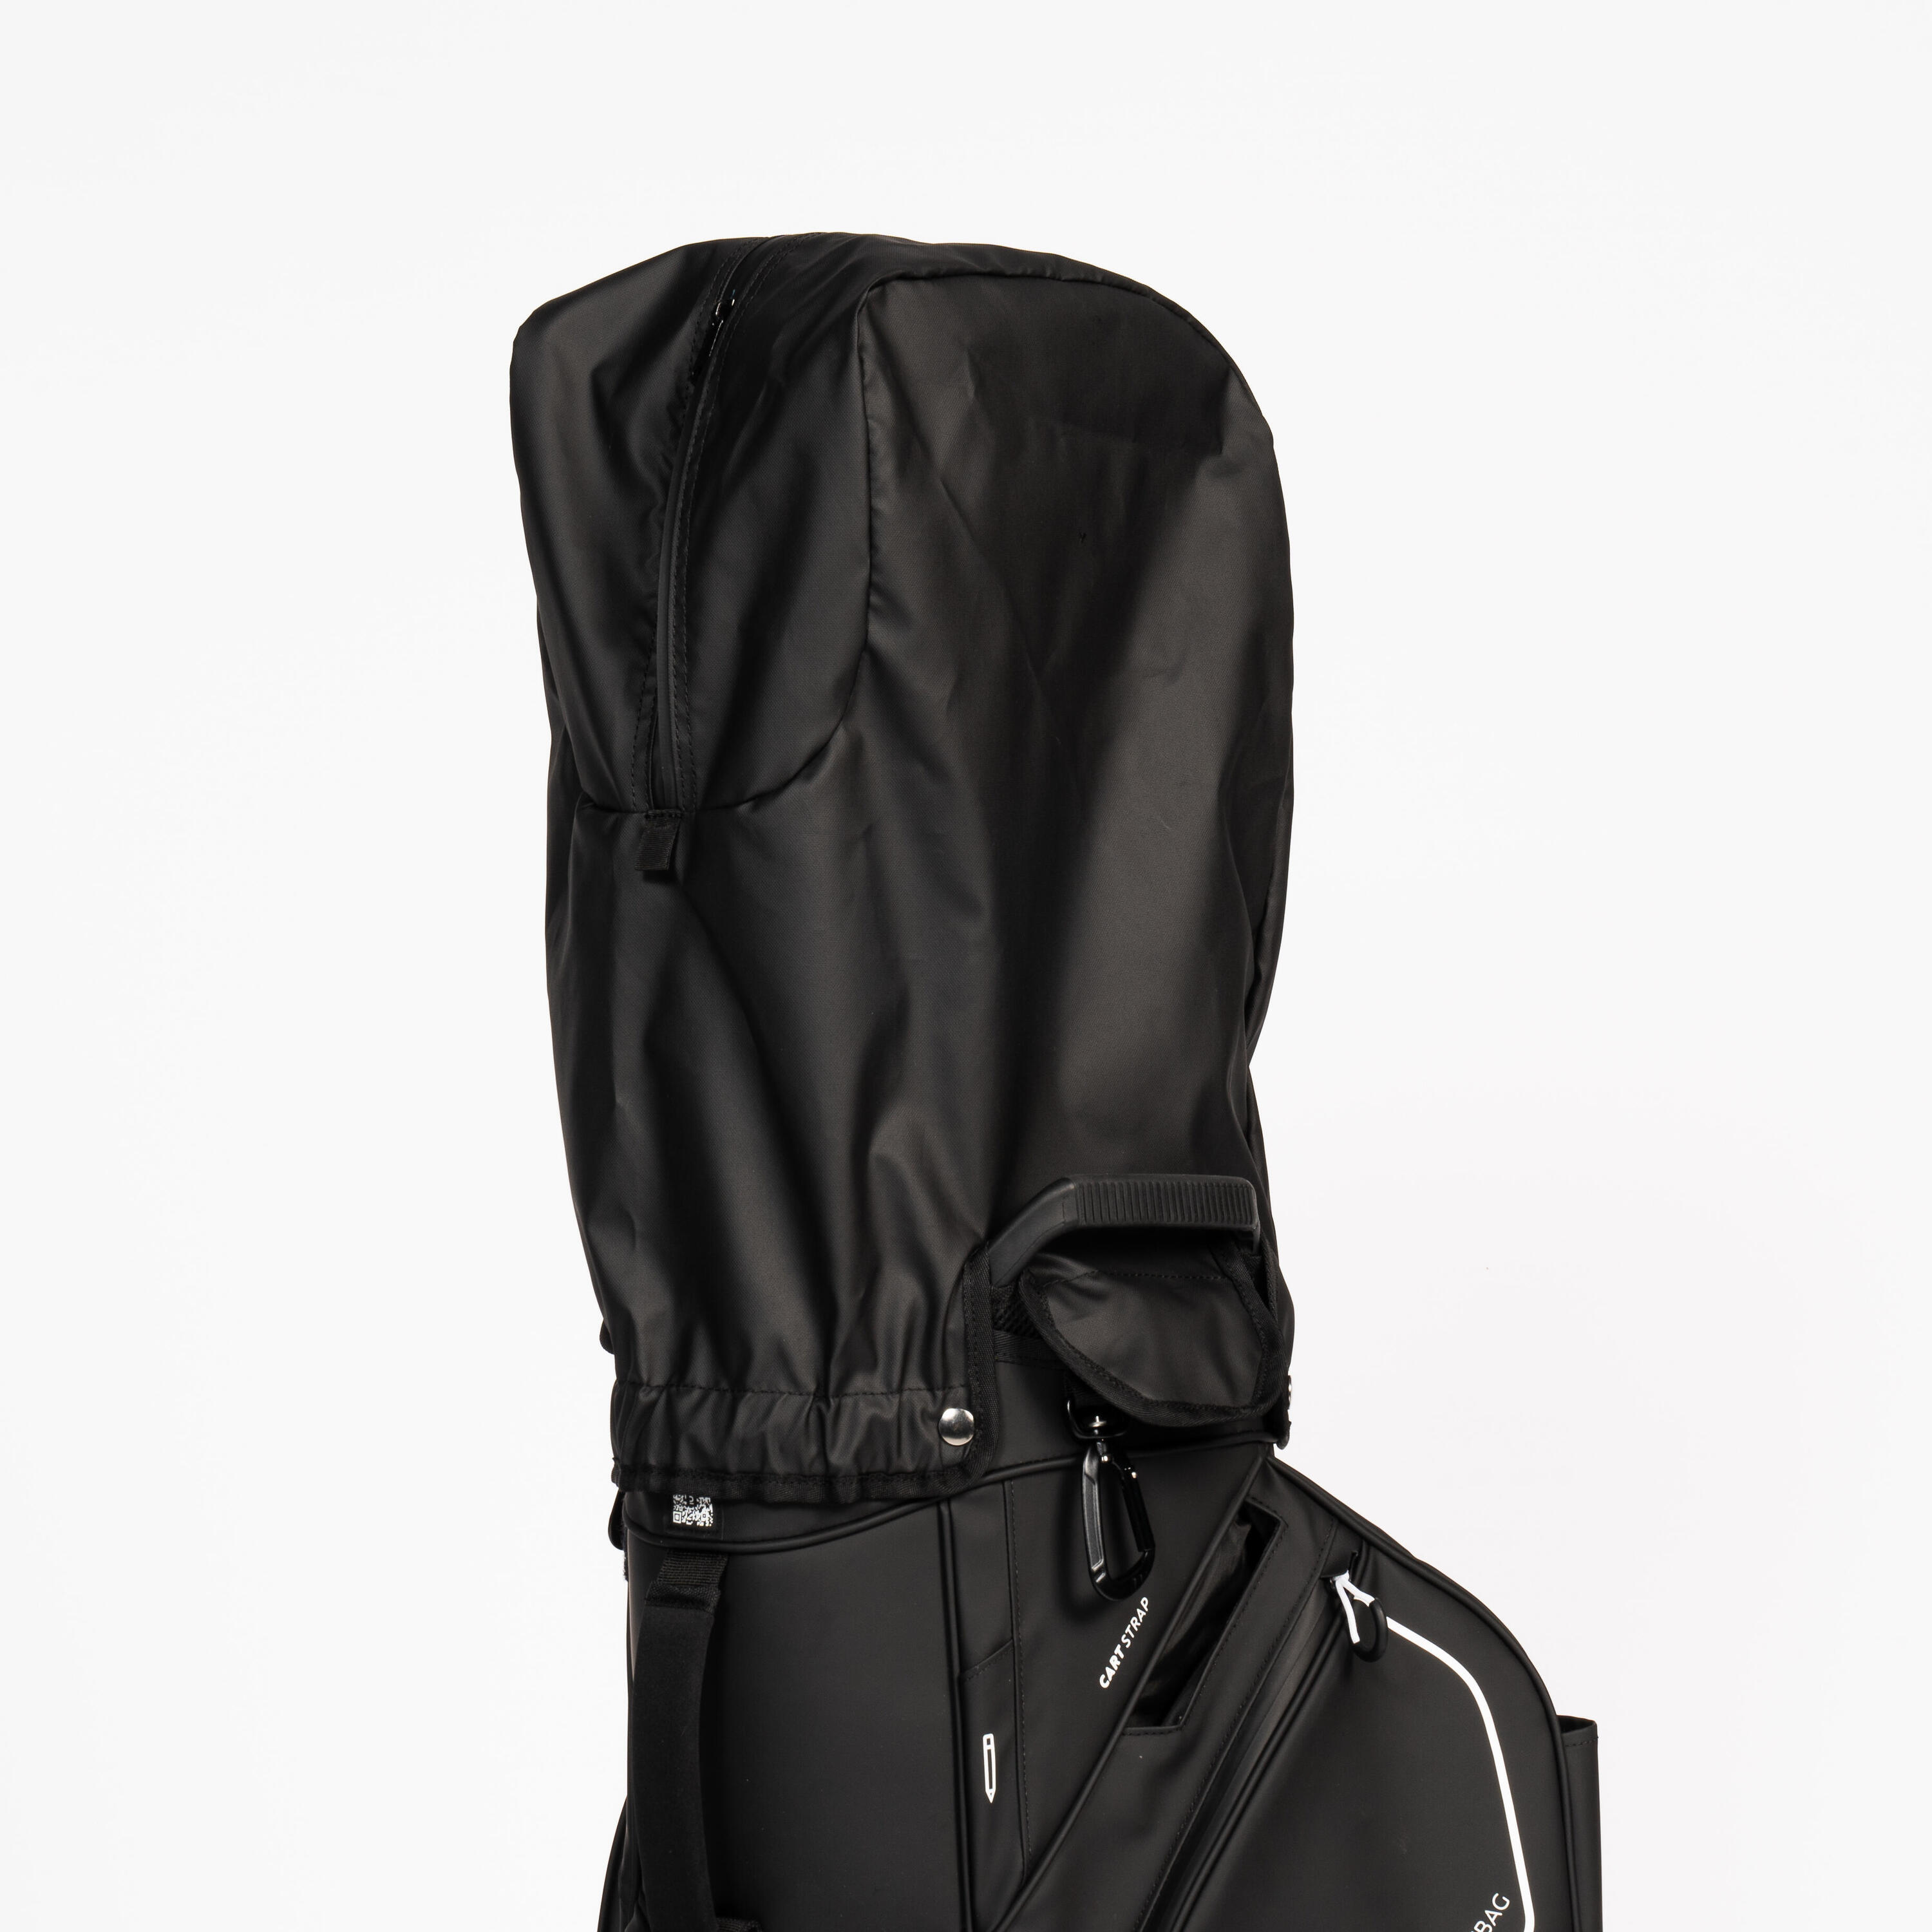 Golf trolley bag waterproof – INESIS cart black 12/12